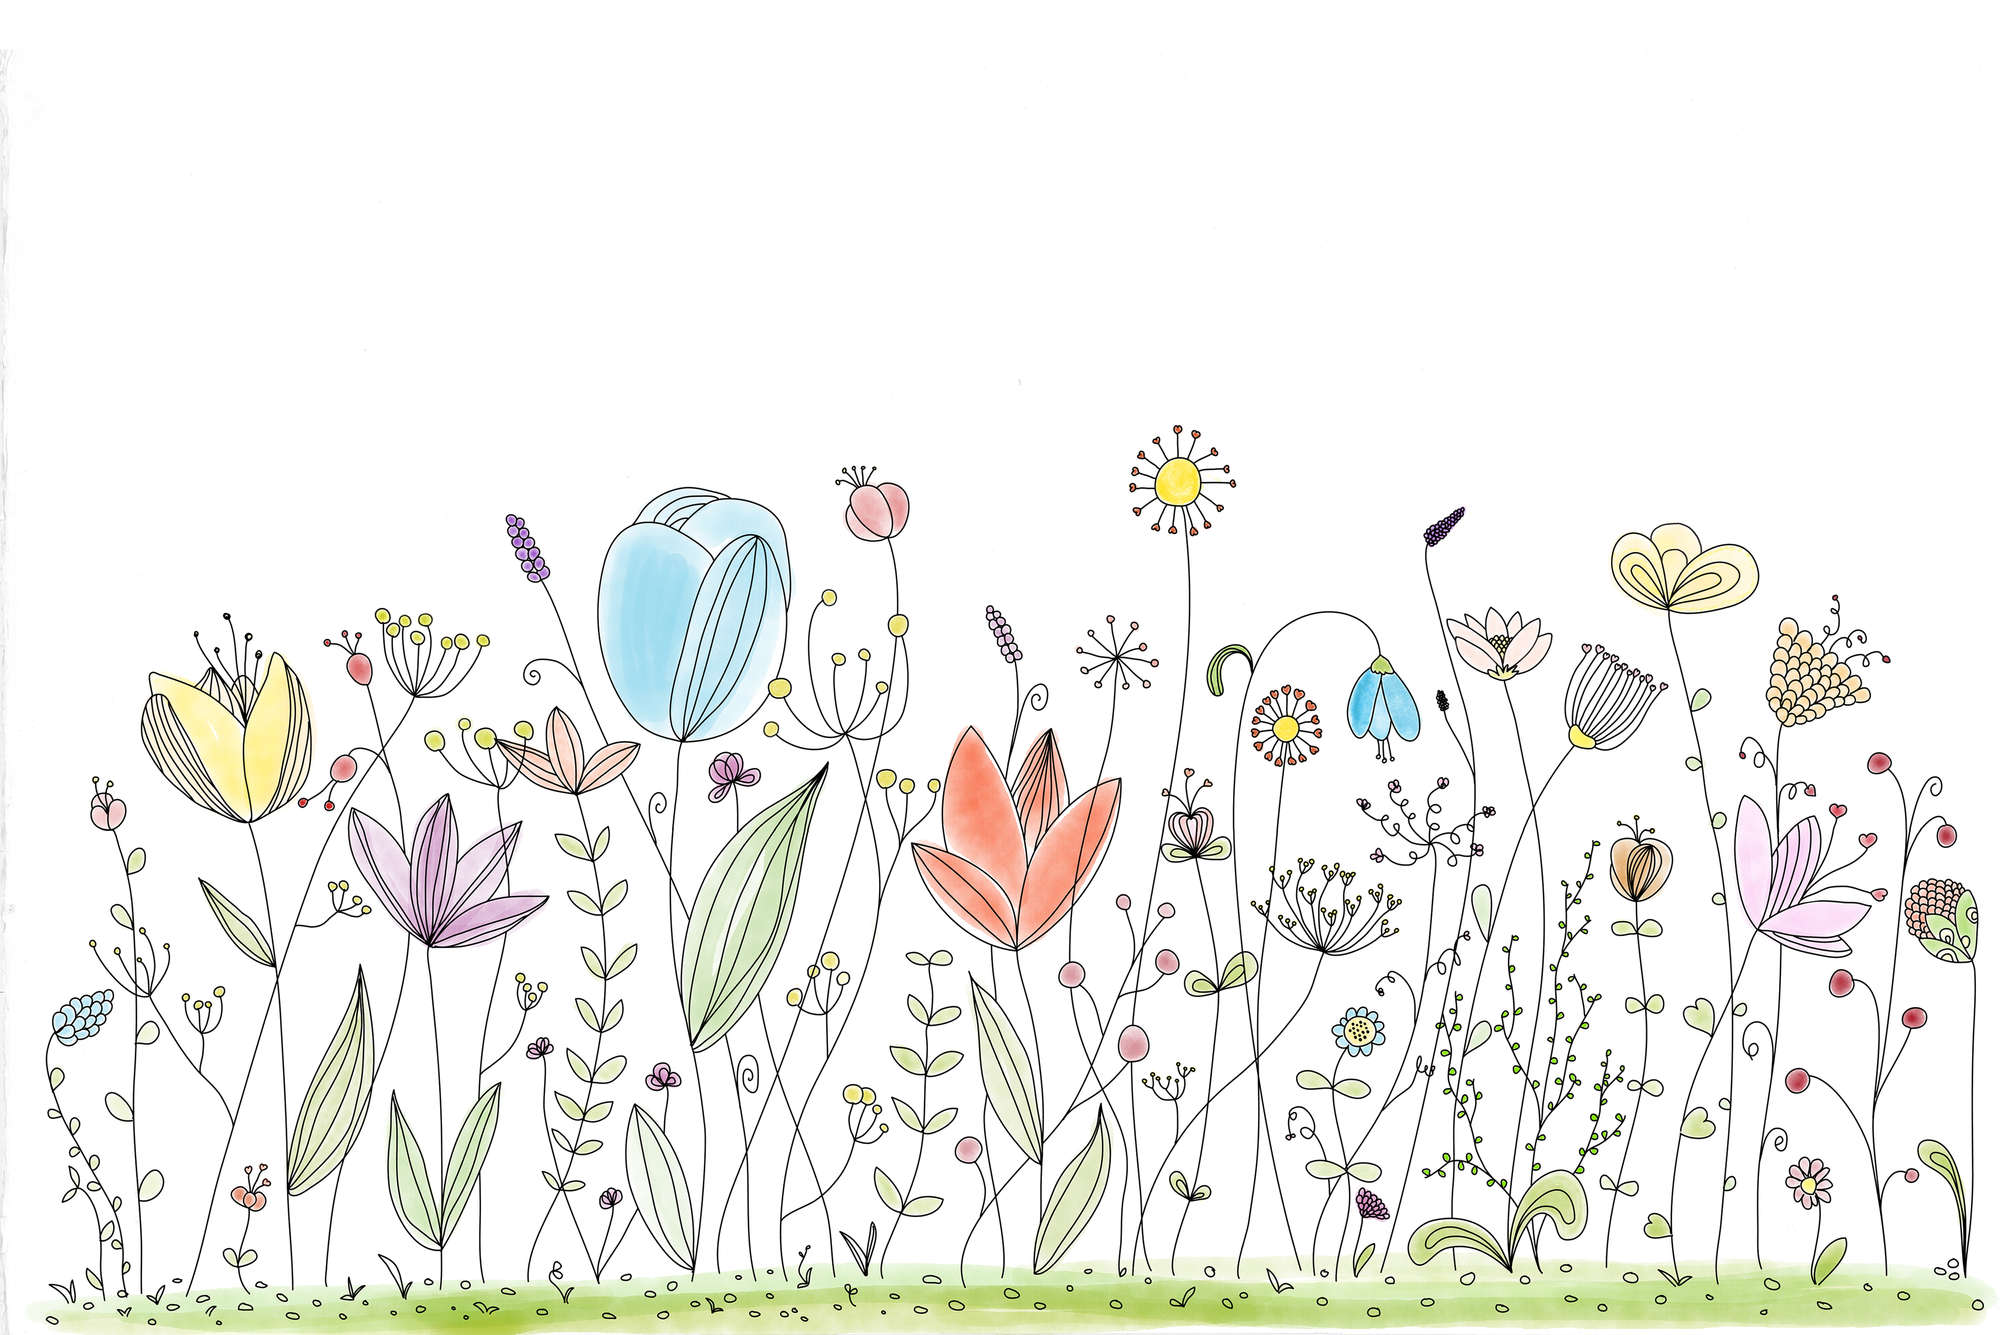             Papier peint enfant avec des fleurs colorées dessinées sur intissé lisse premium
        